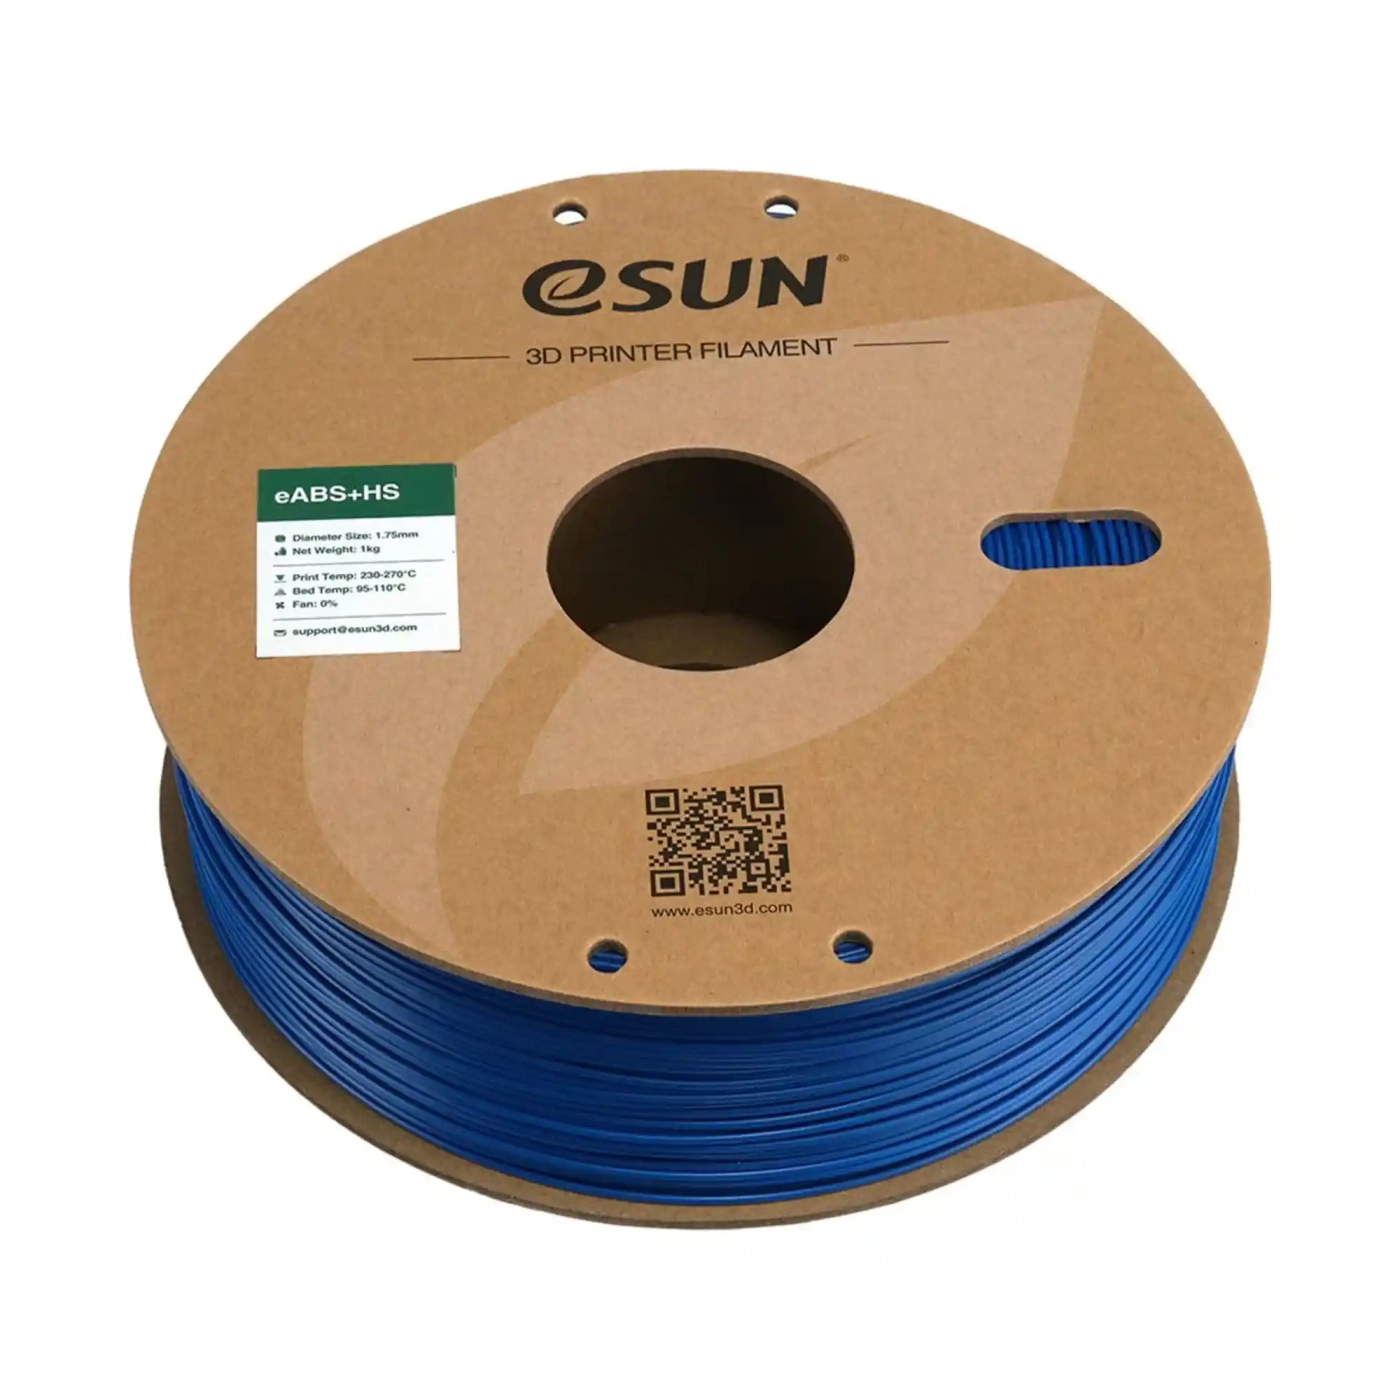 Купить eABS+HS Filament (пластик) для 3D принтера Esun 1кг, 1.75мм, синий (eABS+HS-175U1) - фото 3